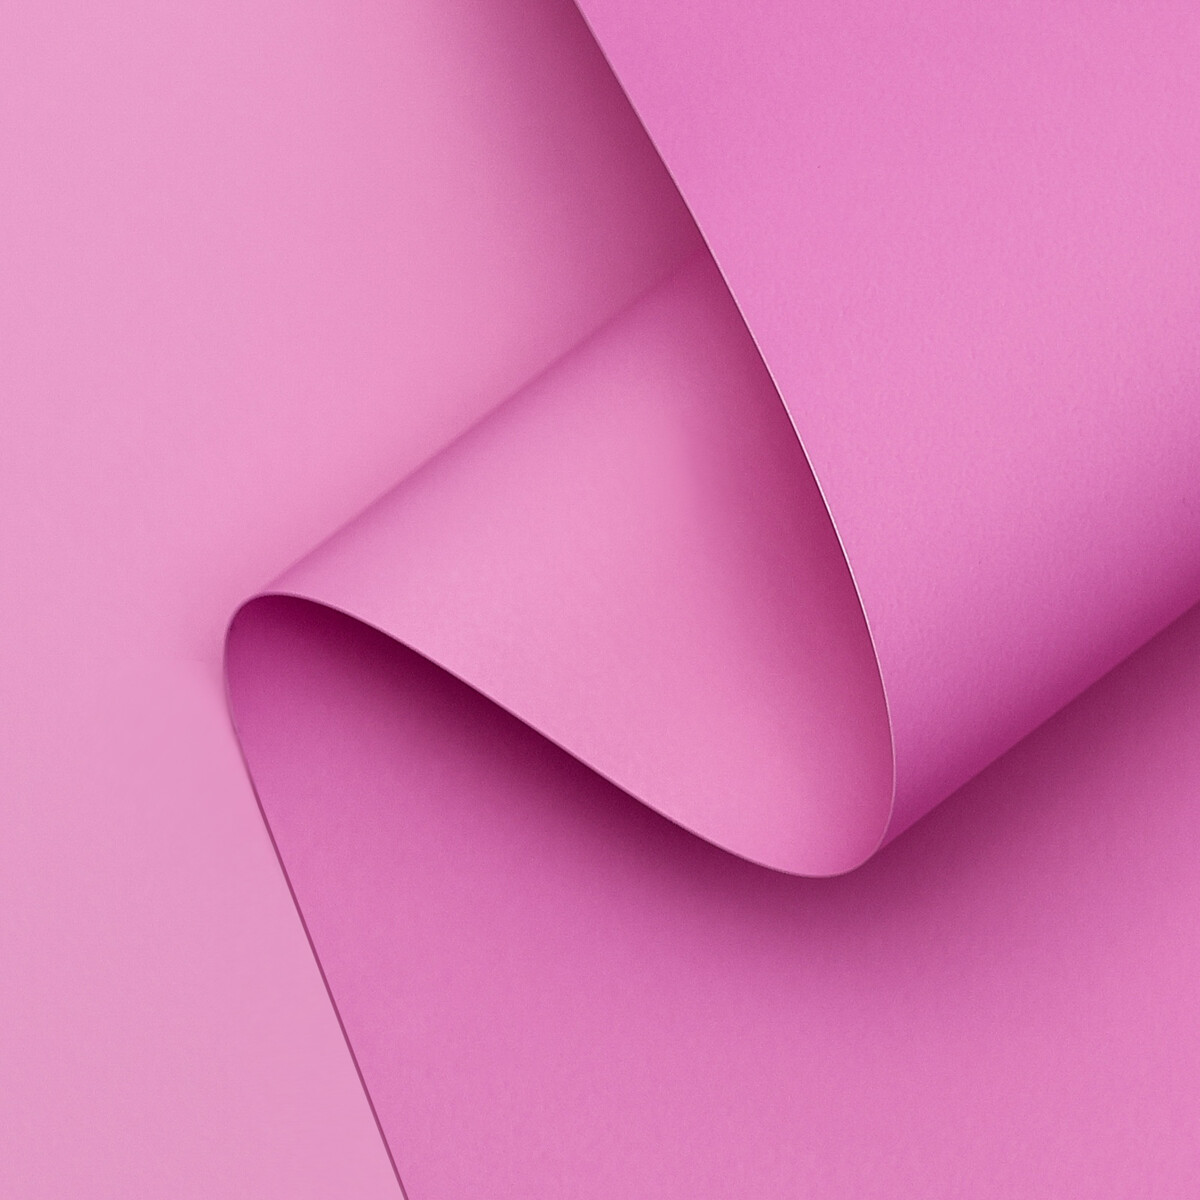 Пленка матовая двухсторонняя 0,50х10м 65мкм, пастельная серия пленка матовая двухсторонняя пастельная серия 65 мкм пастельный розовый 0 5 x 10 м